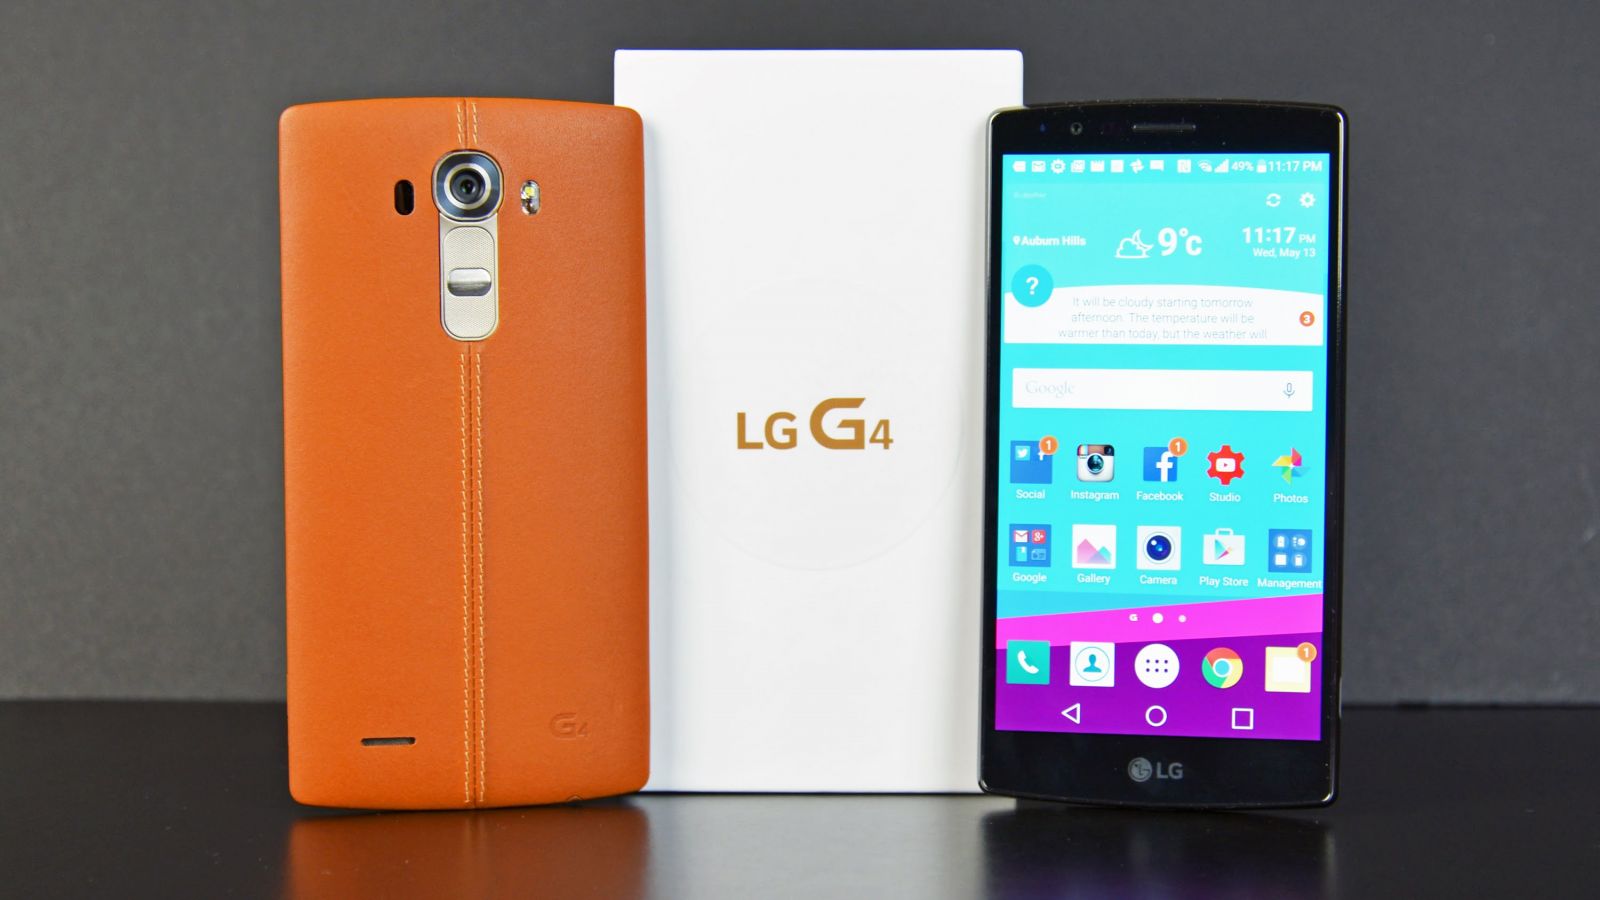 Hướng dẫn cách kiểm tra LG G4 khi mua cũ